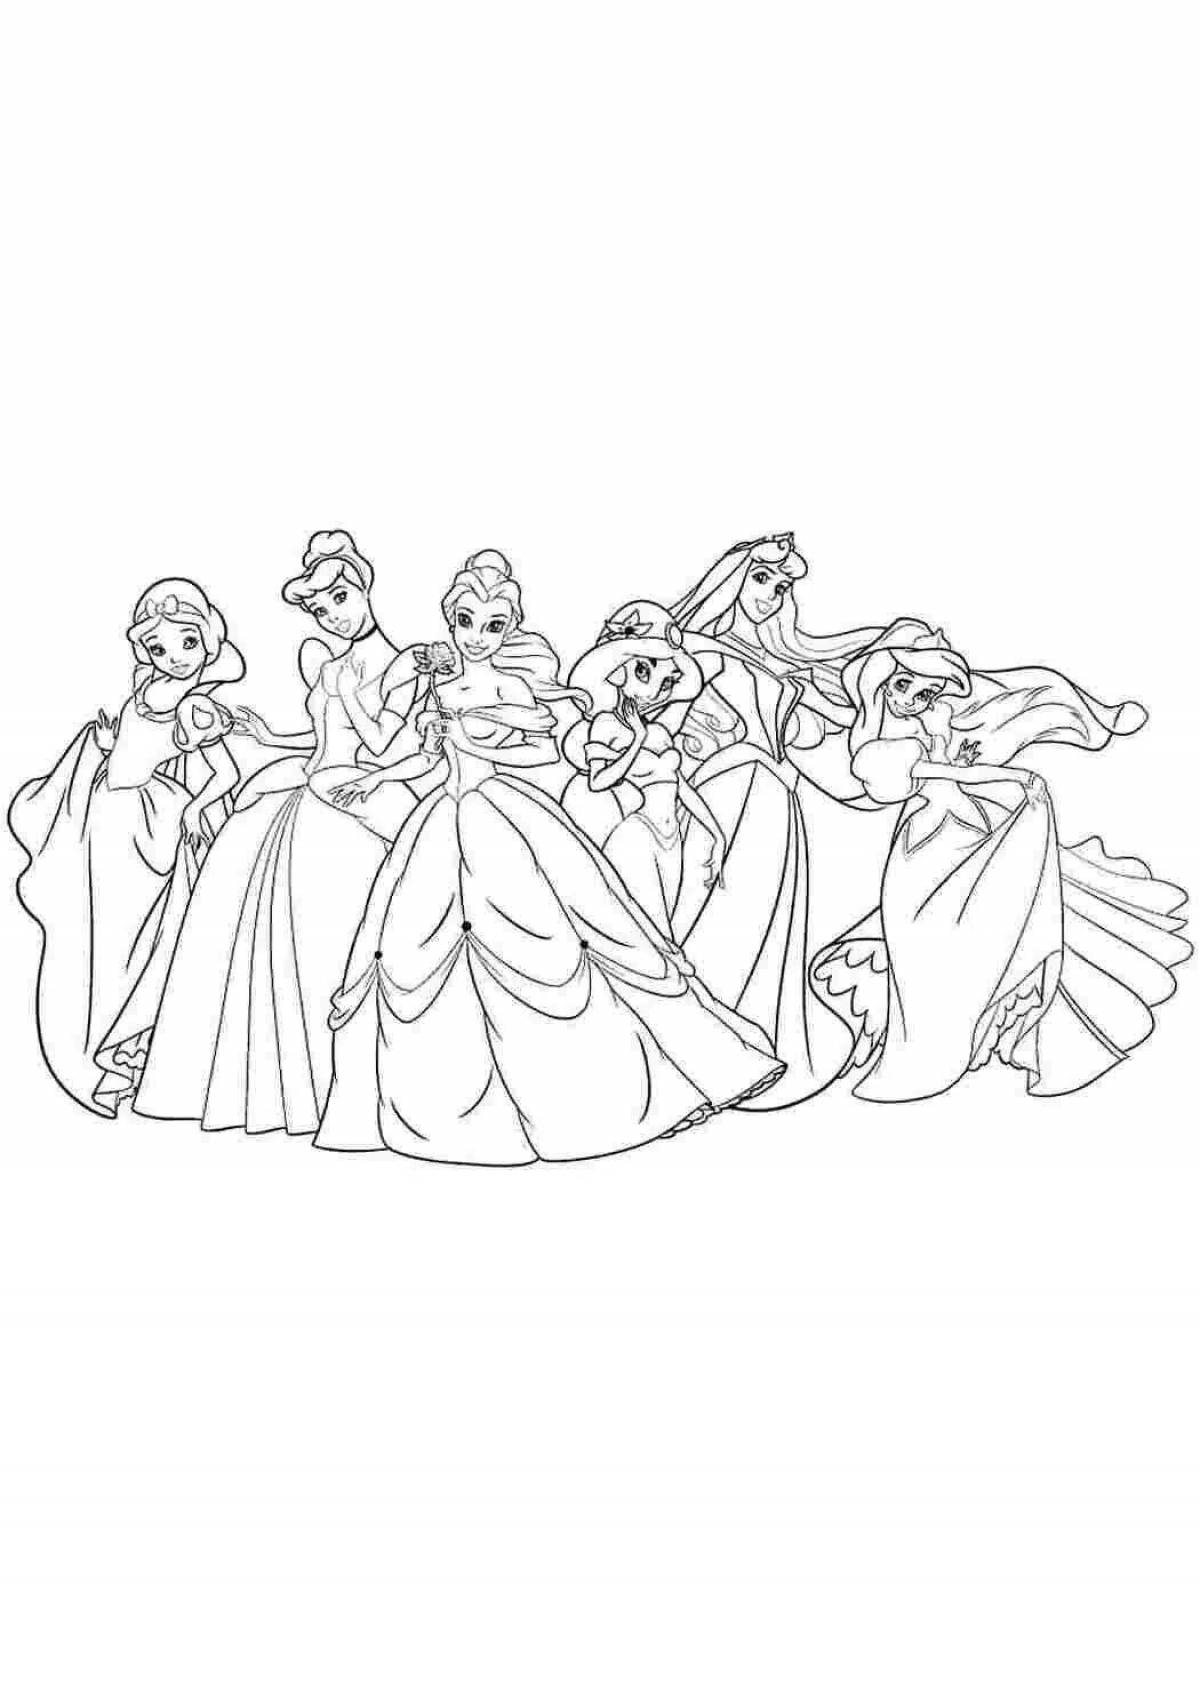 Incredible coloring of all Disney princesses